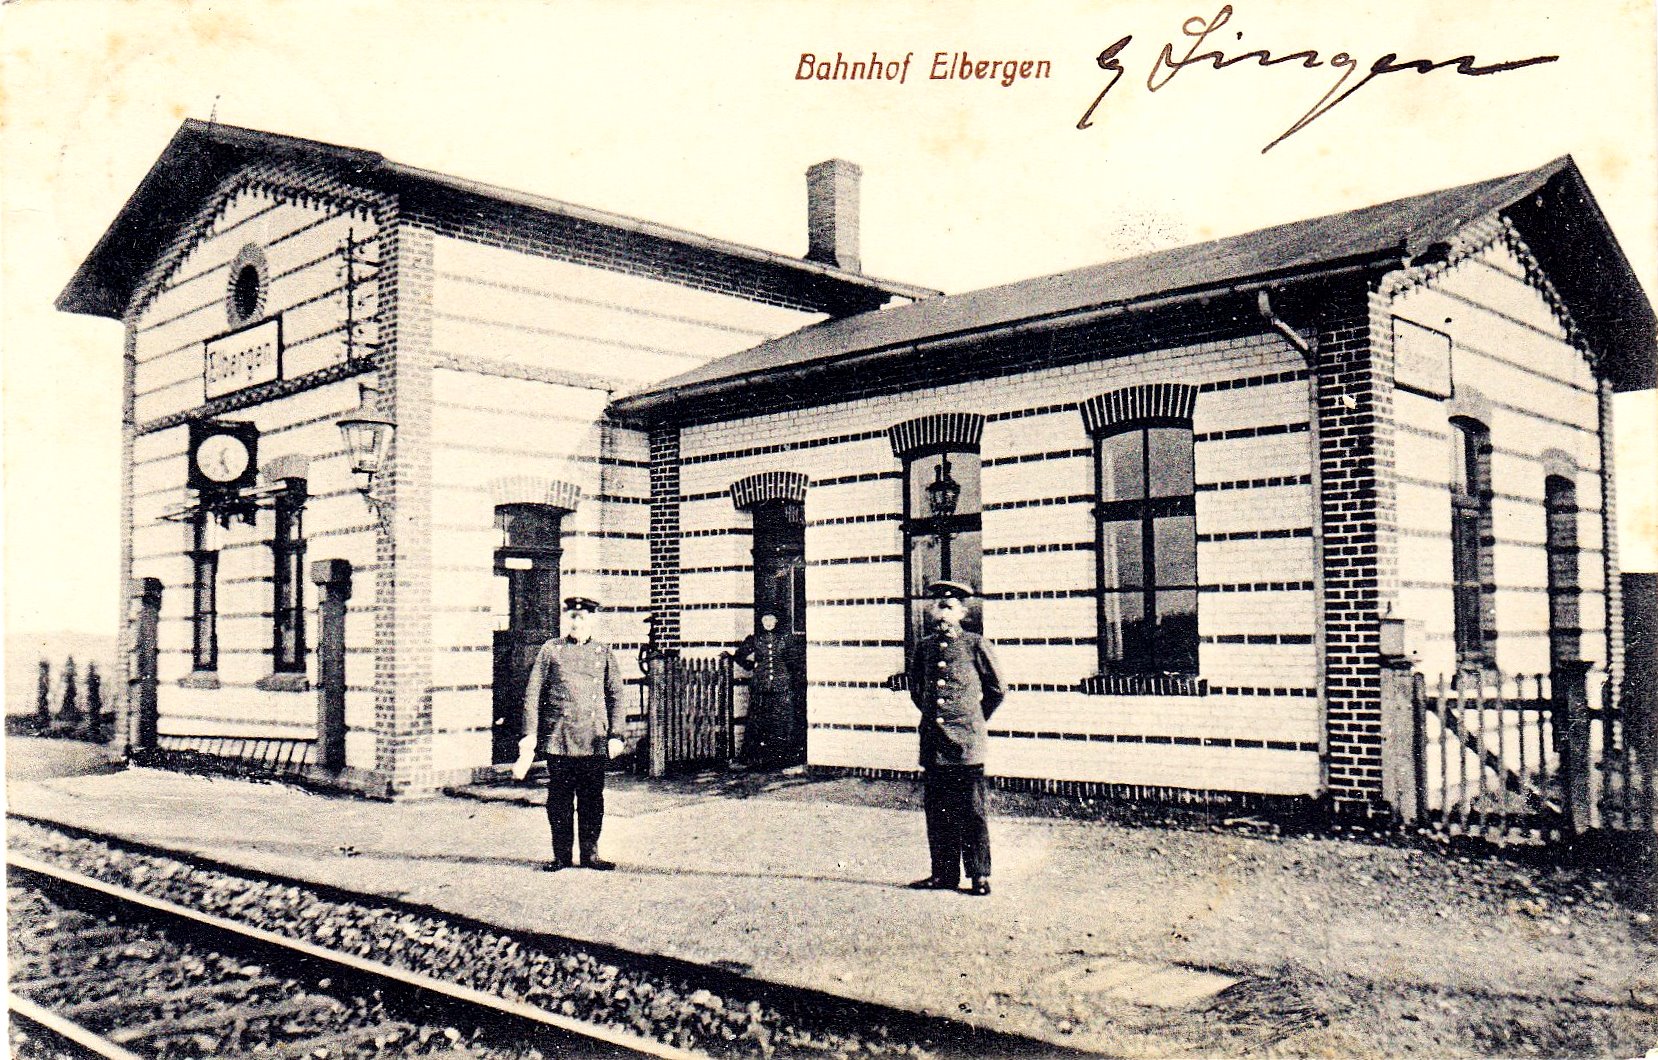 Abb. 1: Der Bahnhof Elbergen auf einer alten Postkarte.